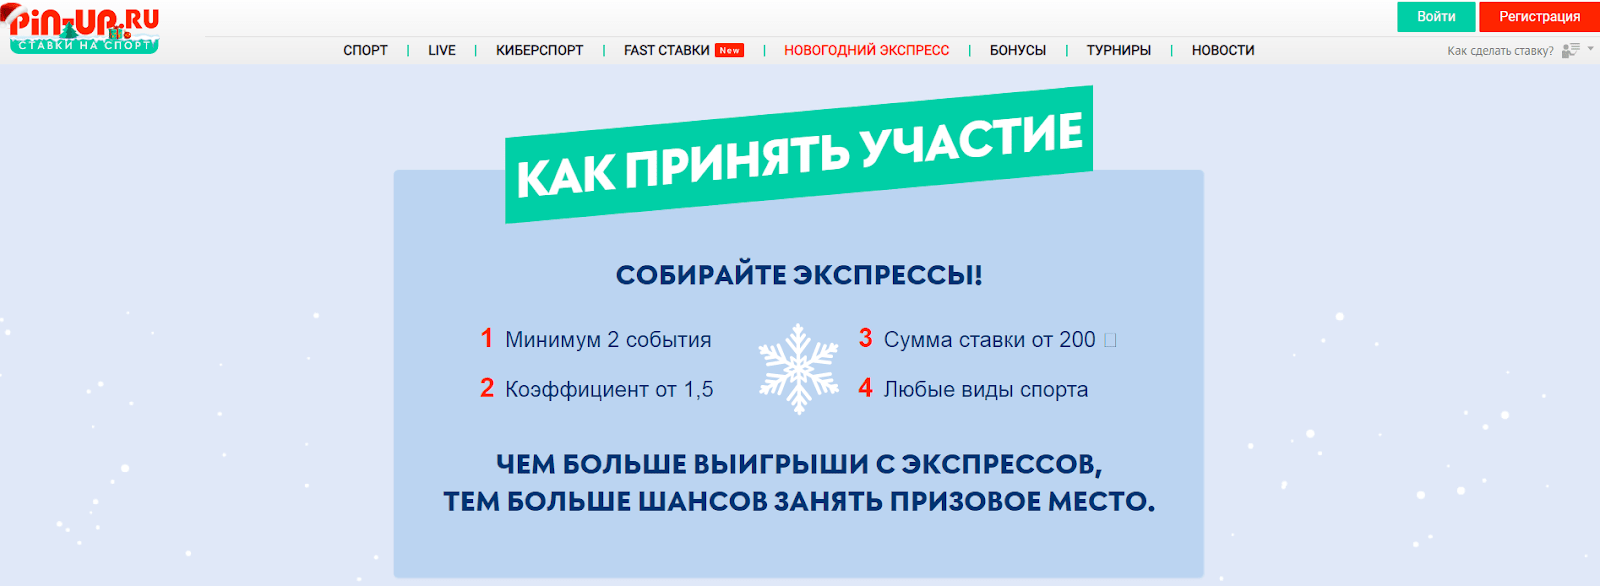 Условия новогодней акции от Pin-up.ru